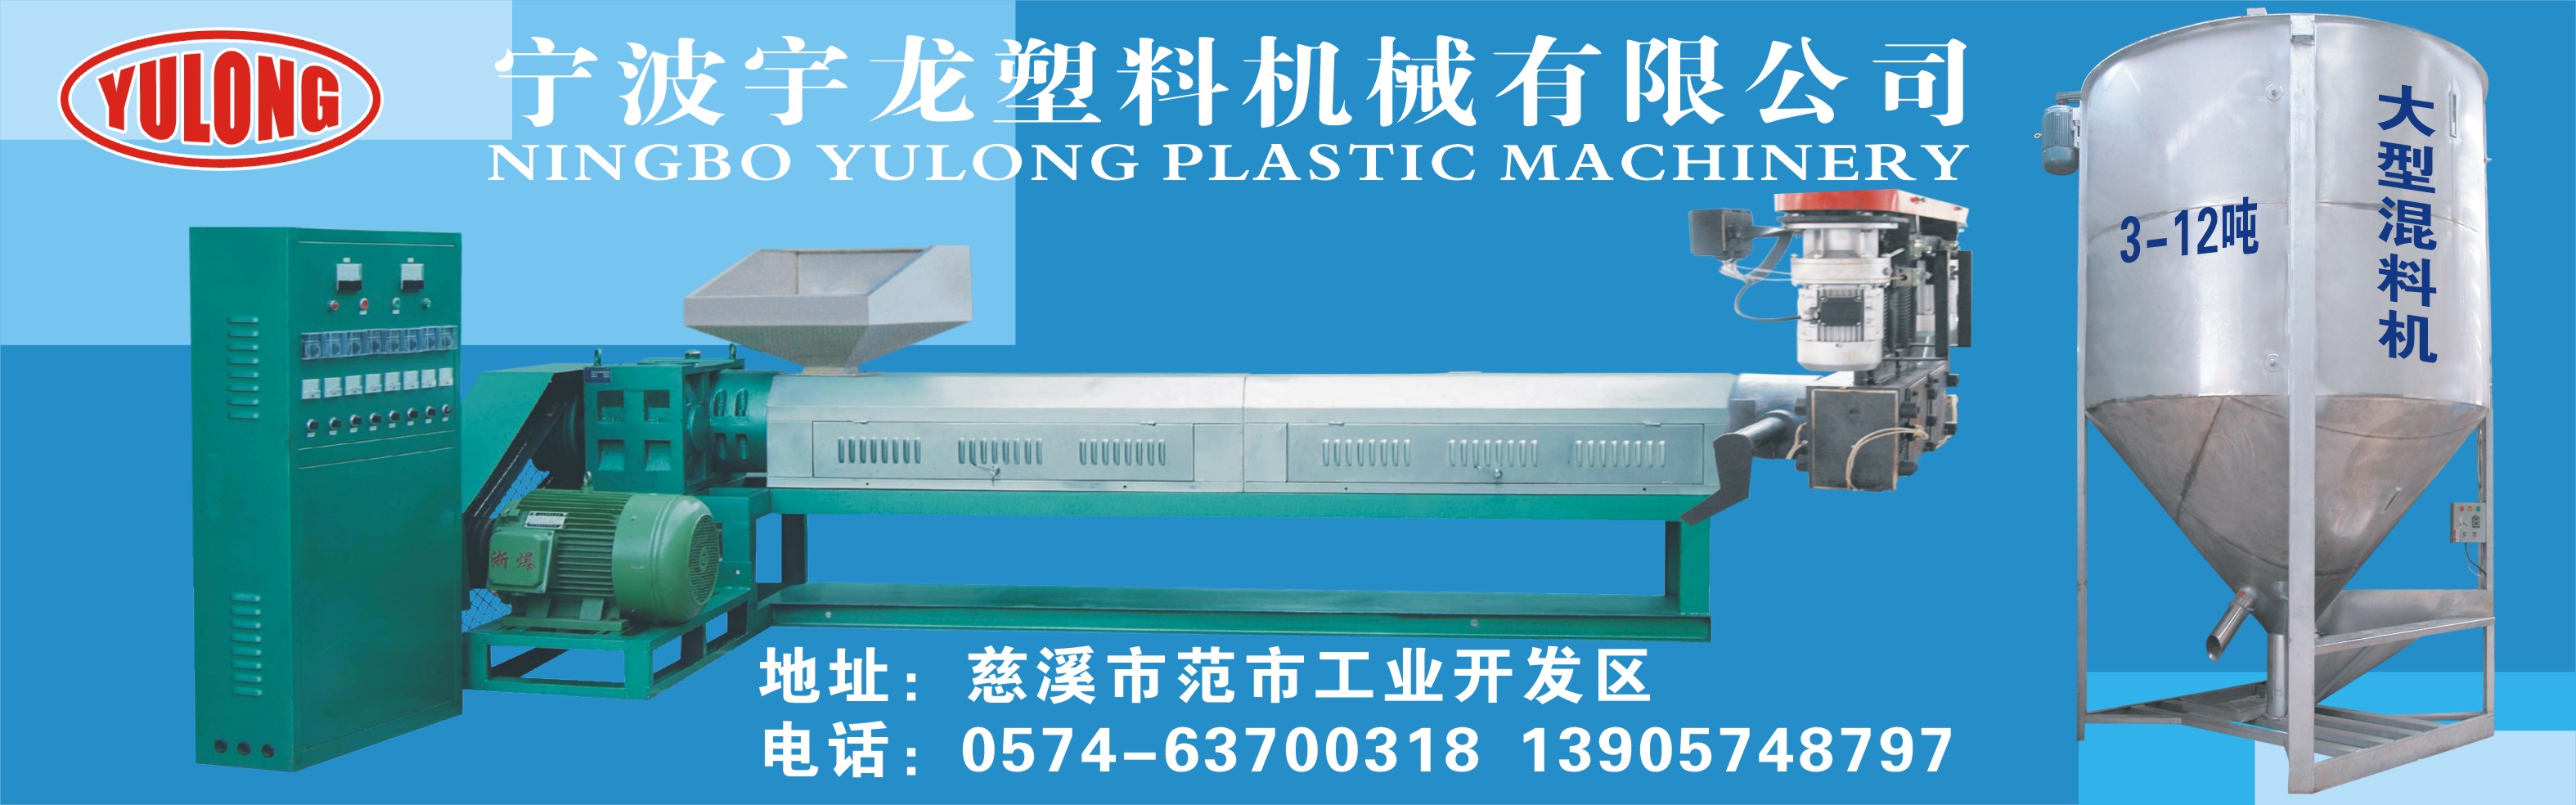 宁波宇龙塑料机械有限公司